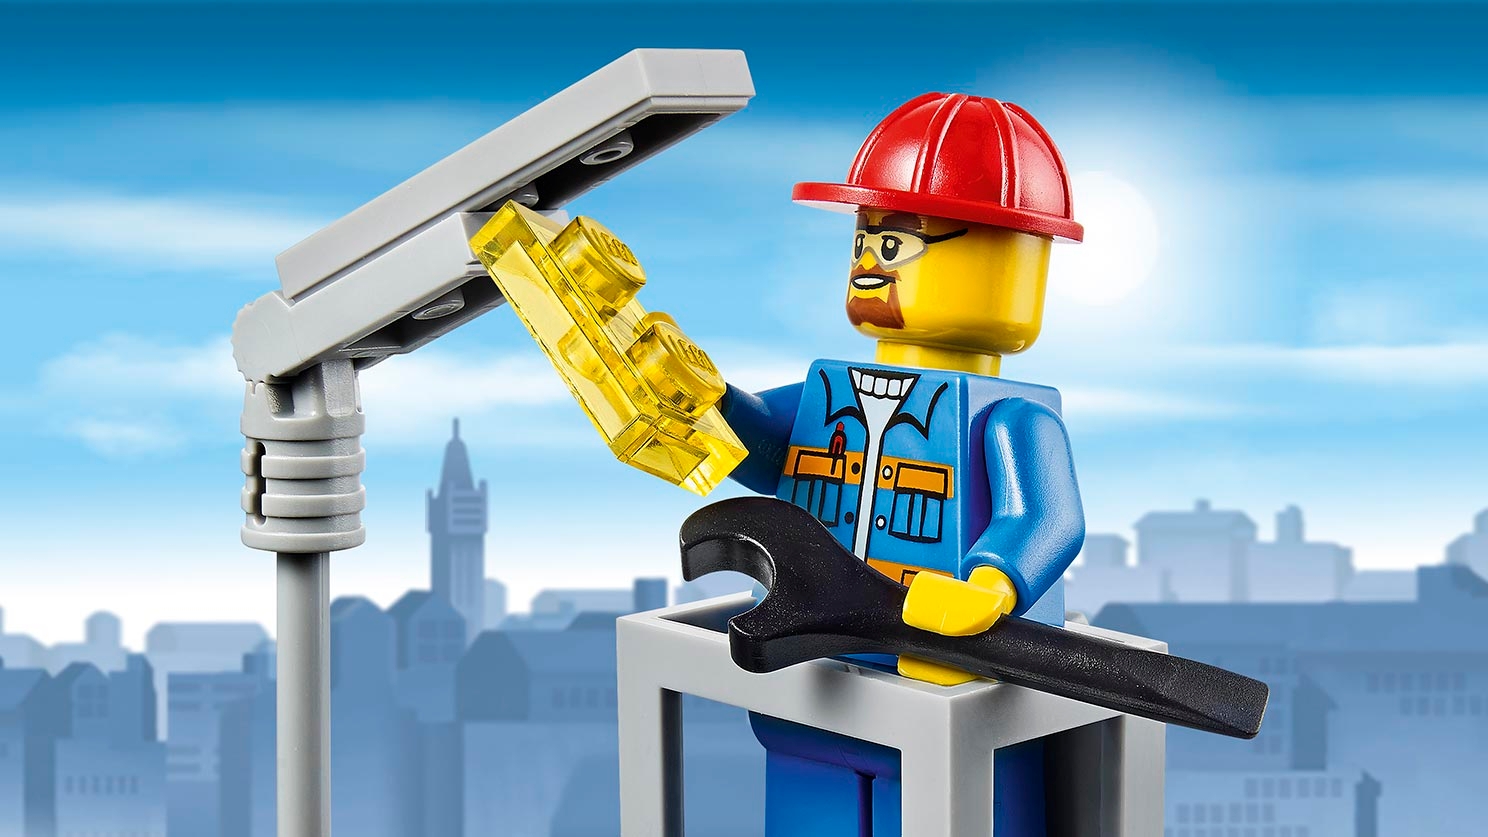 på trods af Kriger Fremragende Light Repair Truck 60054 - LEGO® City Sets - LEGO.com for kids